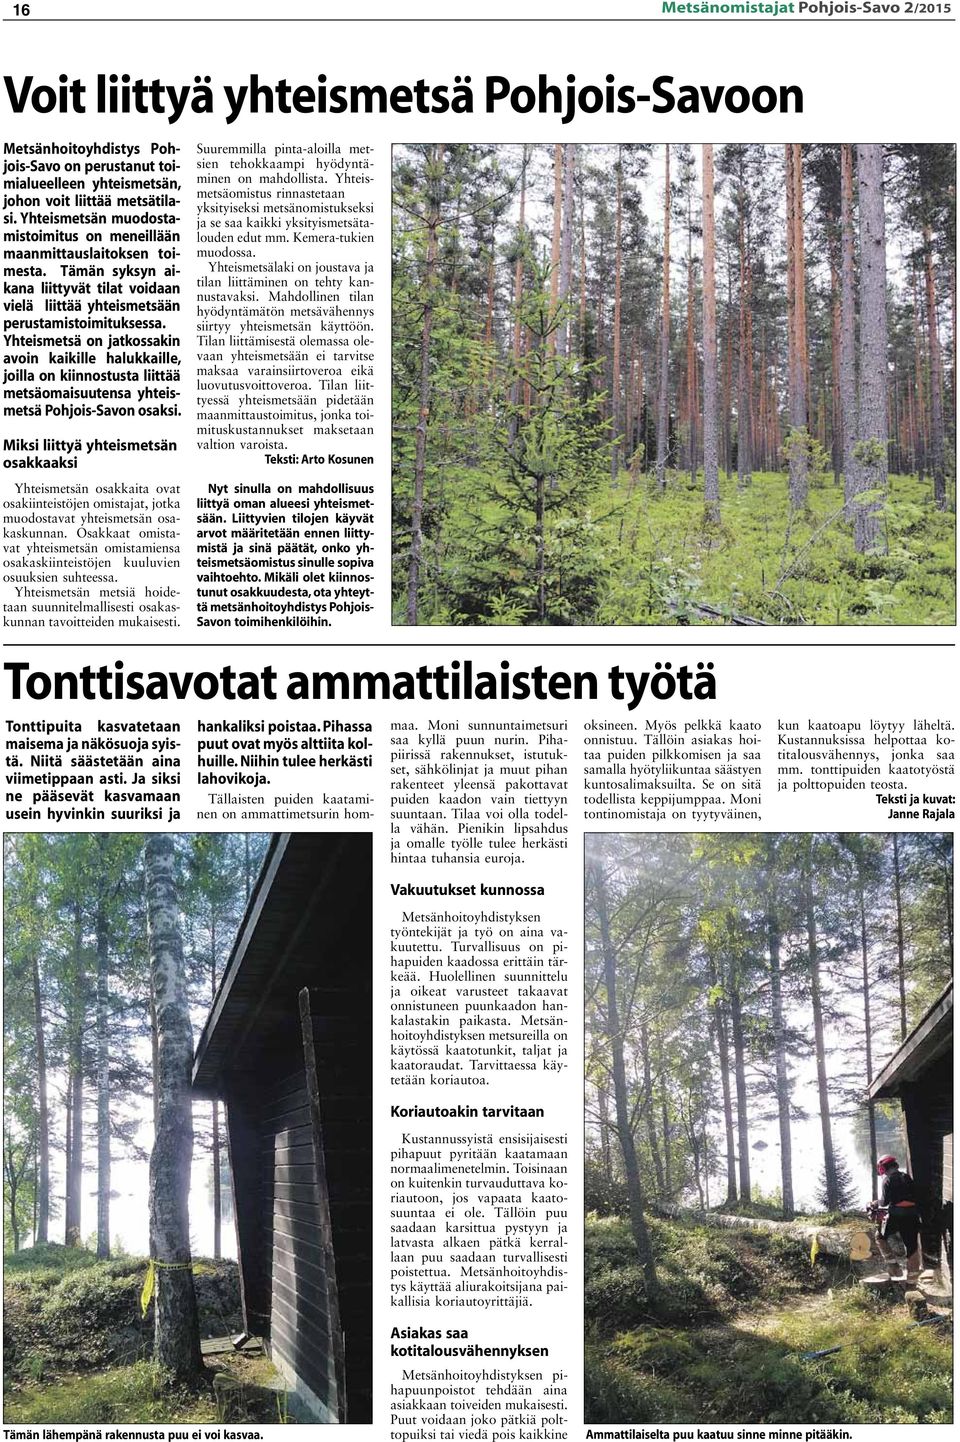 Yhteismetsä on jatkossakin avoin kaikille halukkaille, joilla on kiinnostusta liittää metsäomaisuutensa yhteismetsä Pohjois-Savon osaksi.